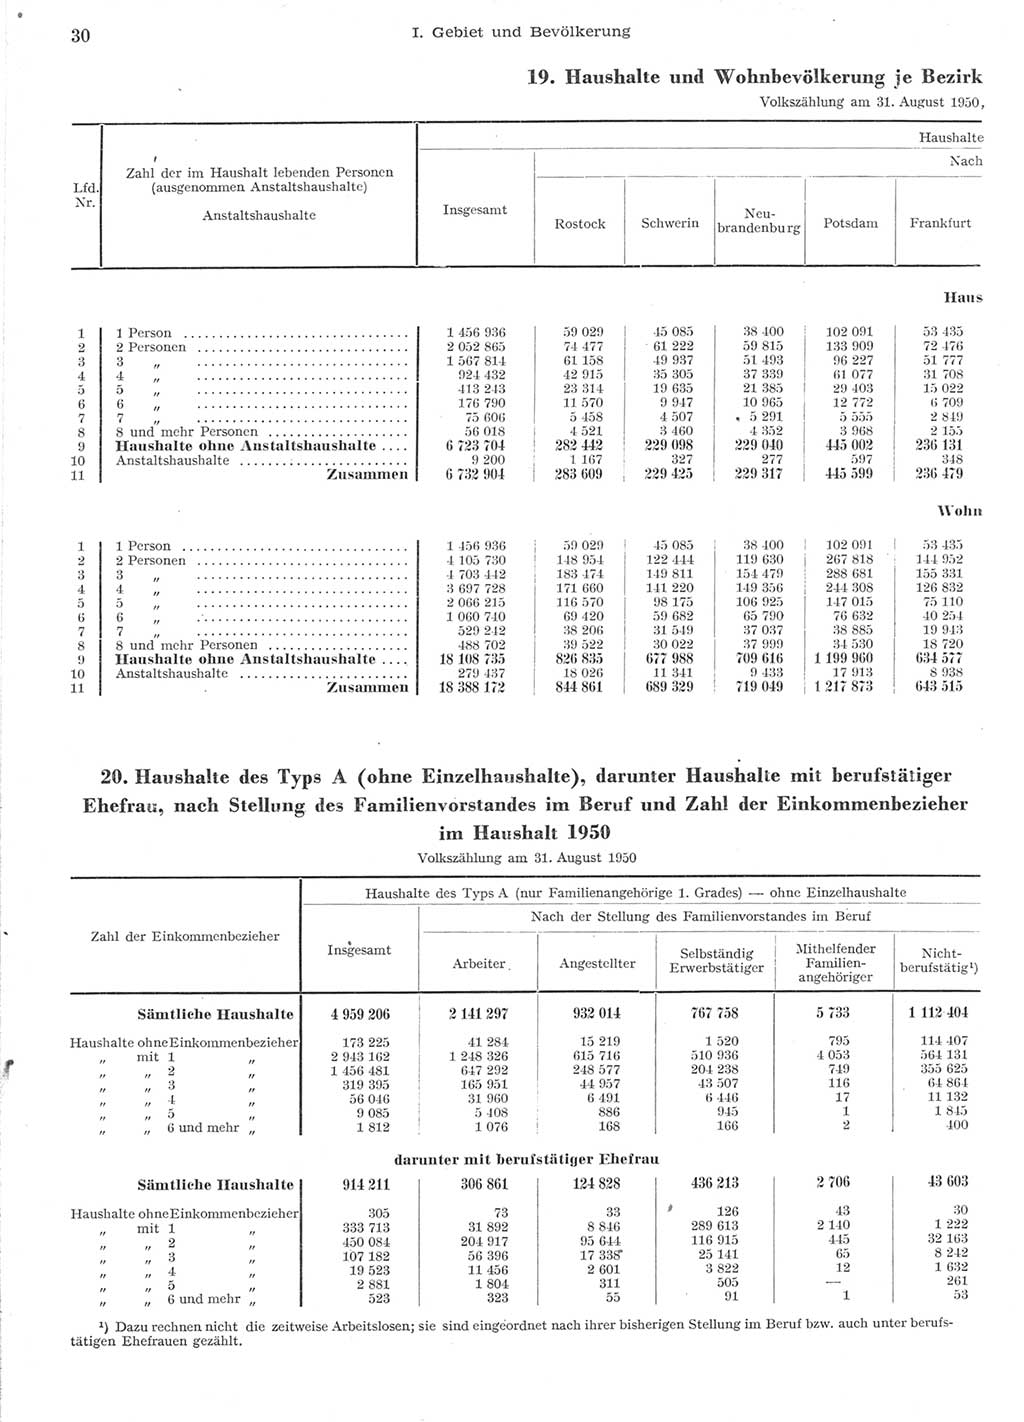 Statistisches Jahrbuch der Deutschen Demokratischen Republik (DDR) 1957, Seite 30 (Stat. Jb. DDR 1957, S. 30)